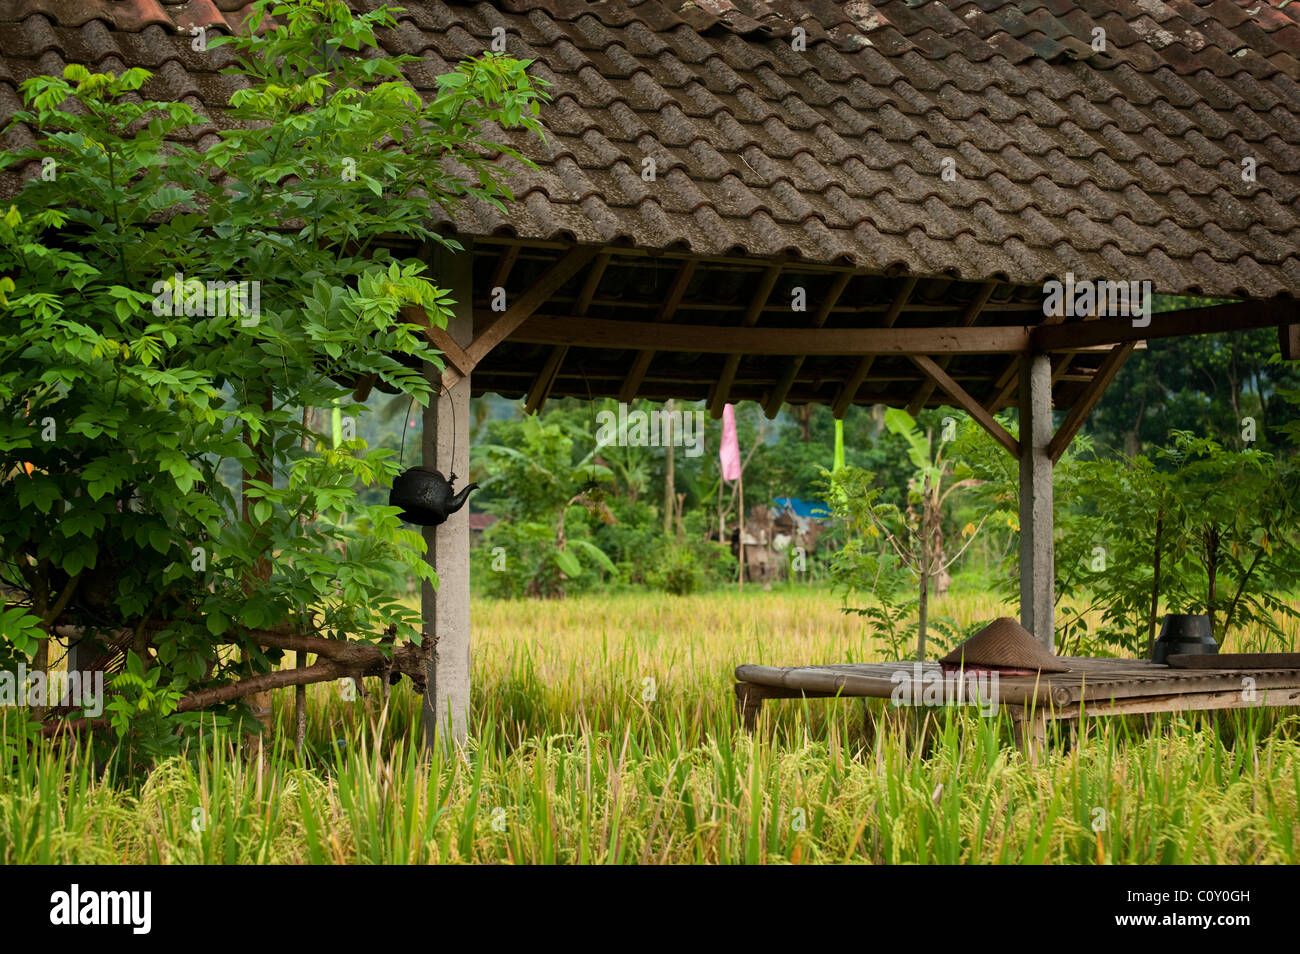 Les rizières de la vallée de Sideman dans Bali, Indonésie, sont particulièrement beaux et intéressants à explorer. Banque D'Images